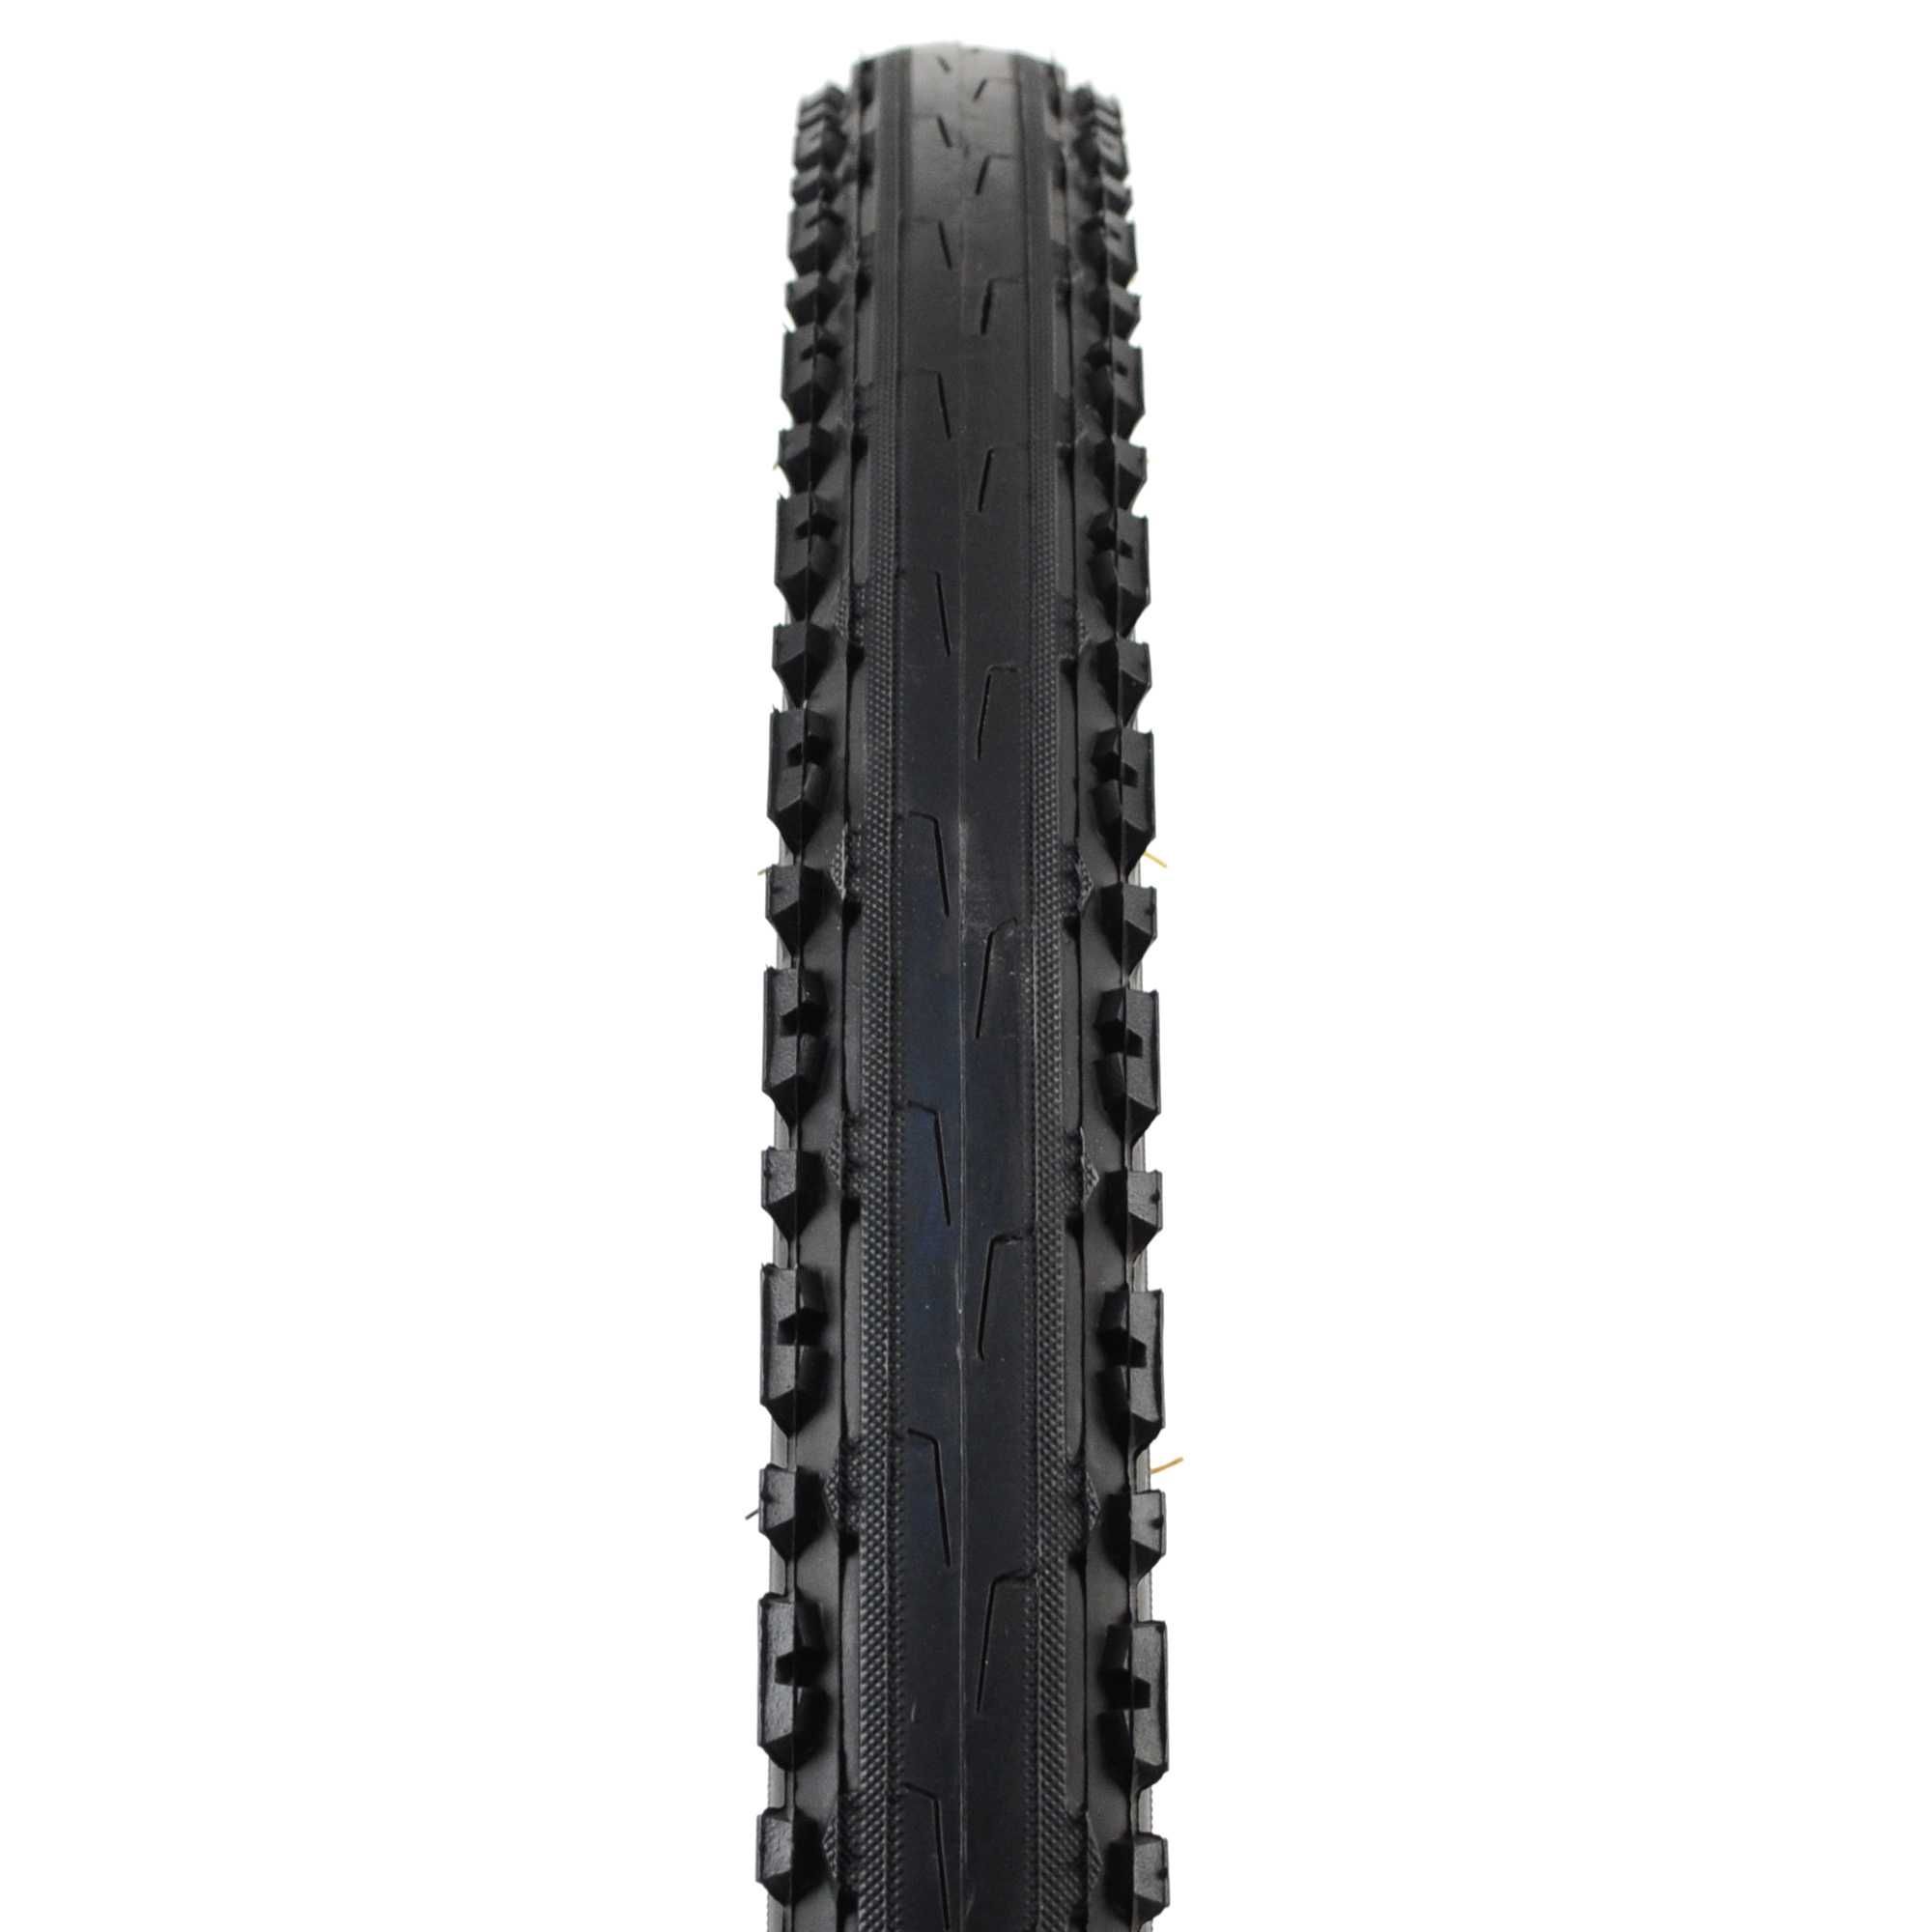 Велосипедна гума KENDA Kross Plus (26x1.95) (50-559) - за смесен терен